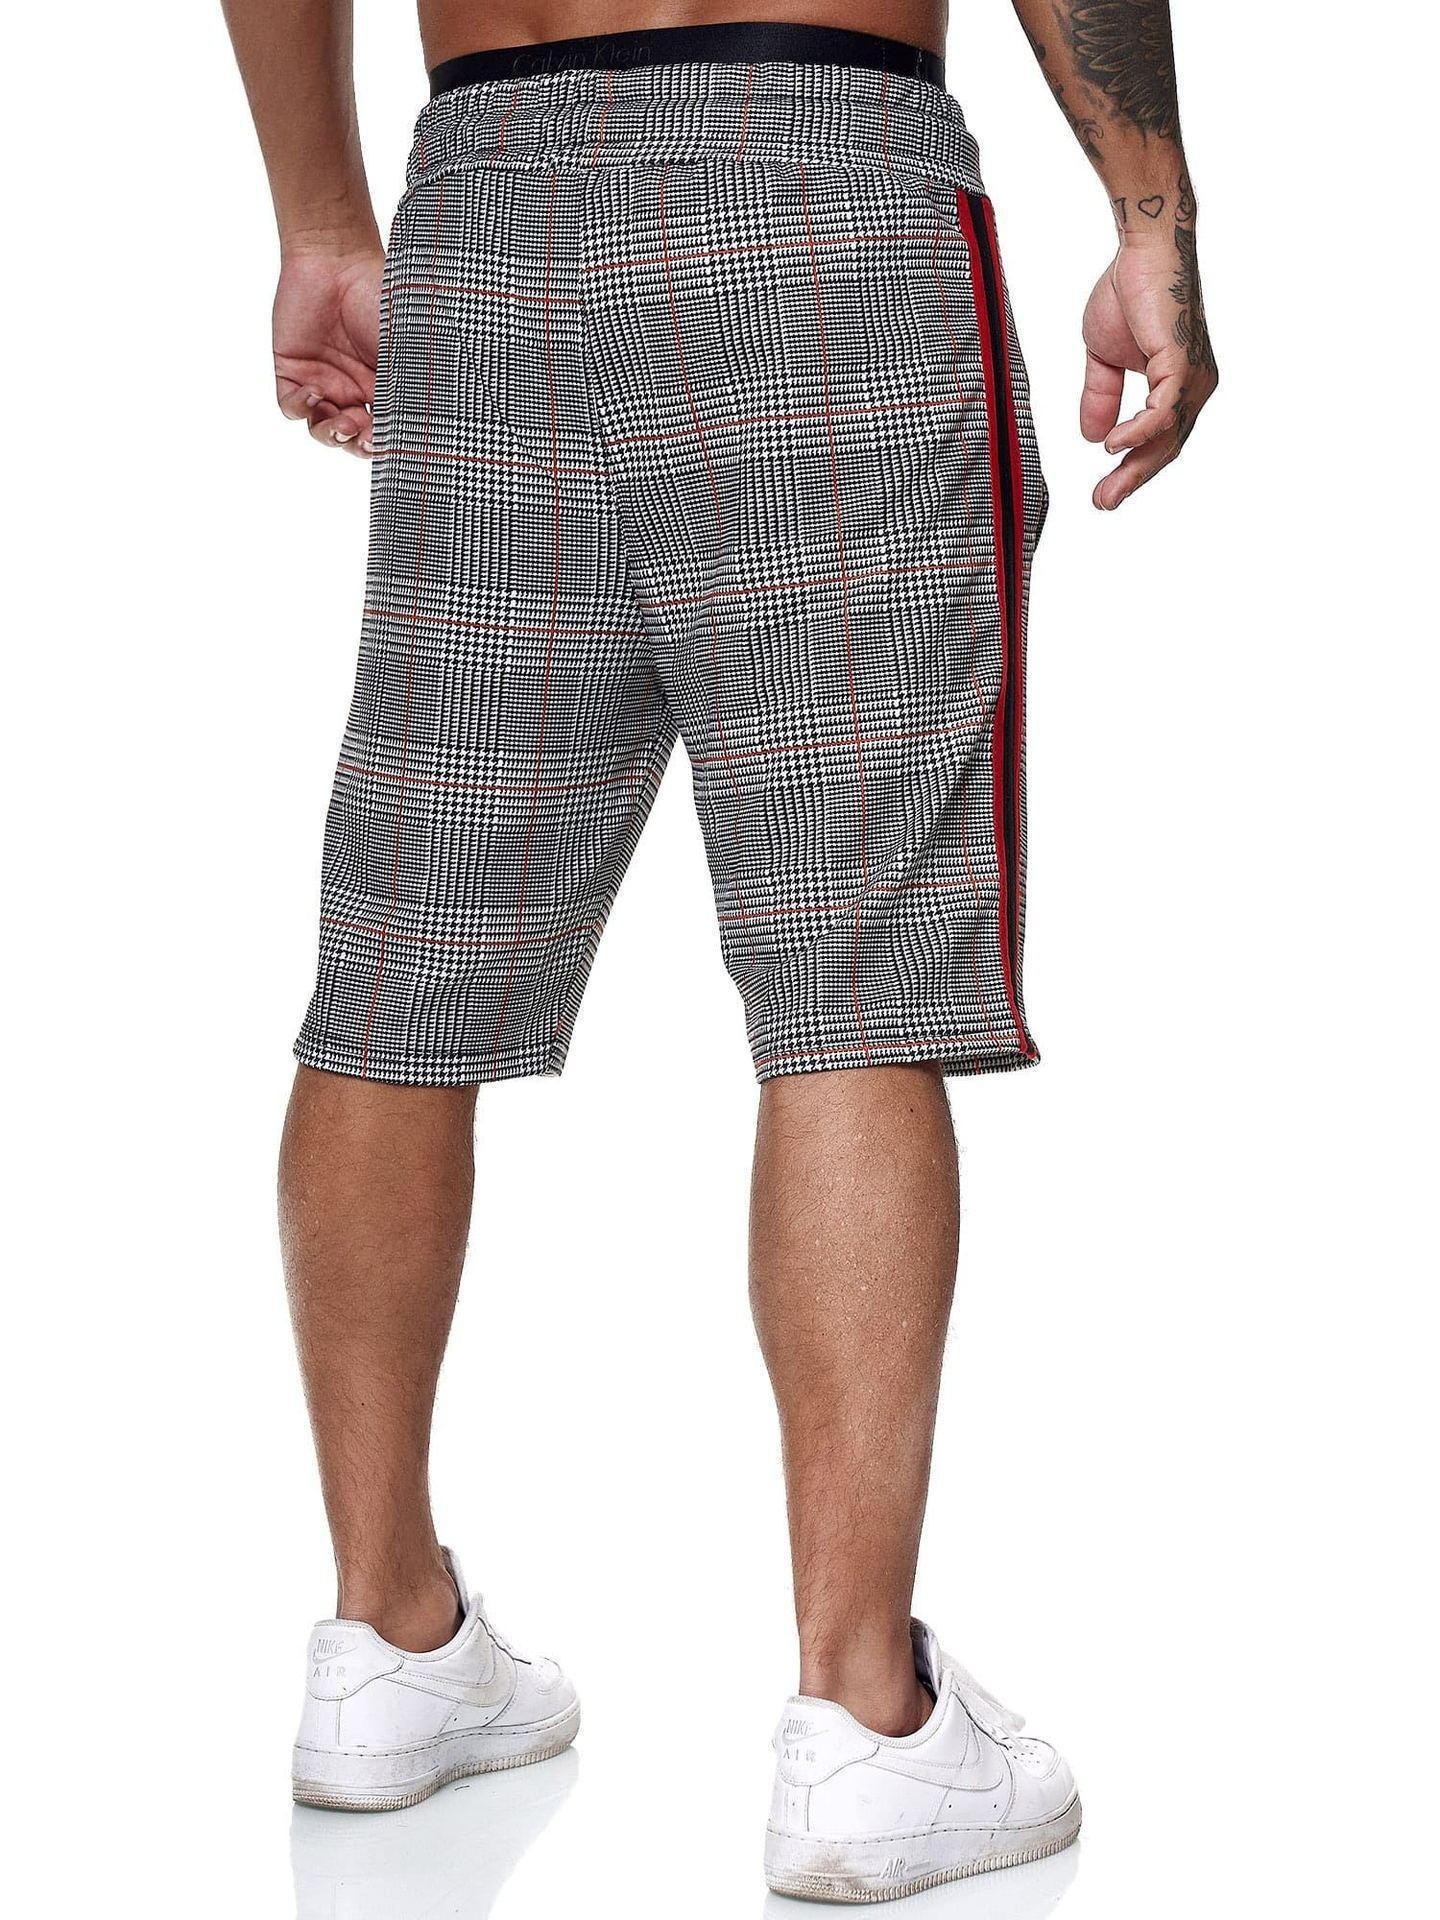 Plaid Casual Shorts For Men - Men's Shorts - LeStyleParfait